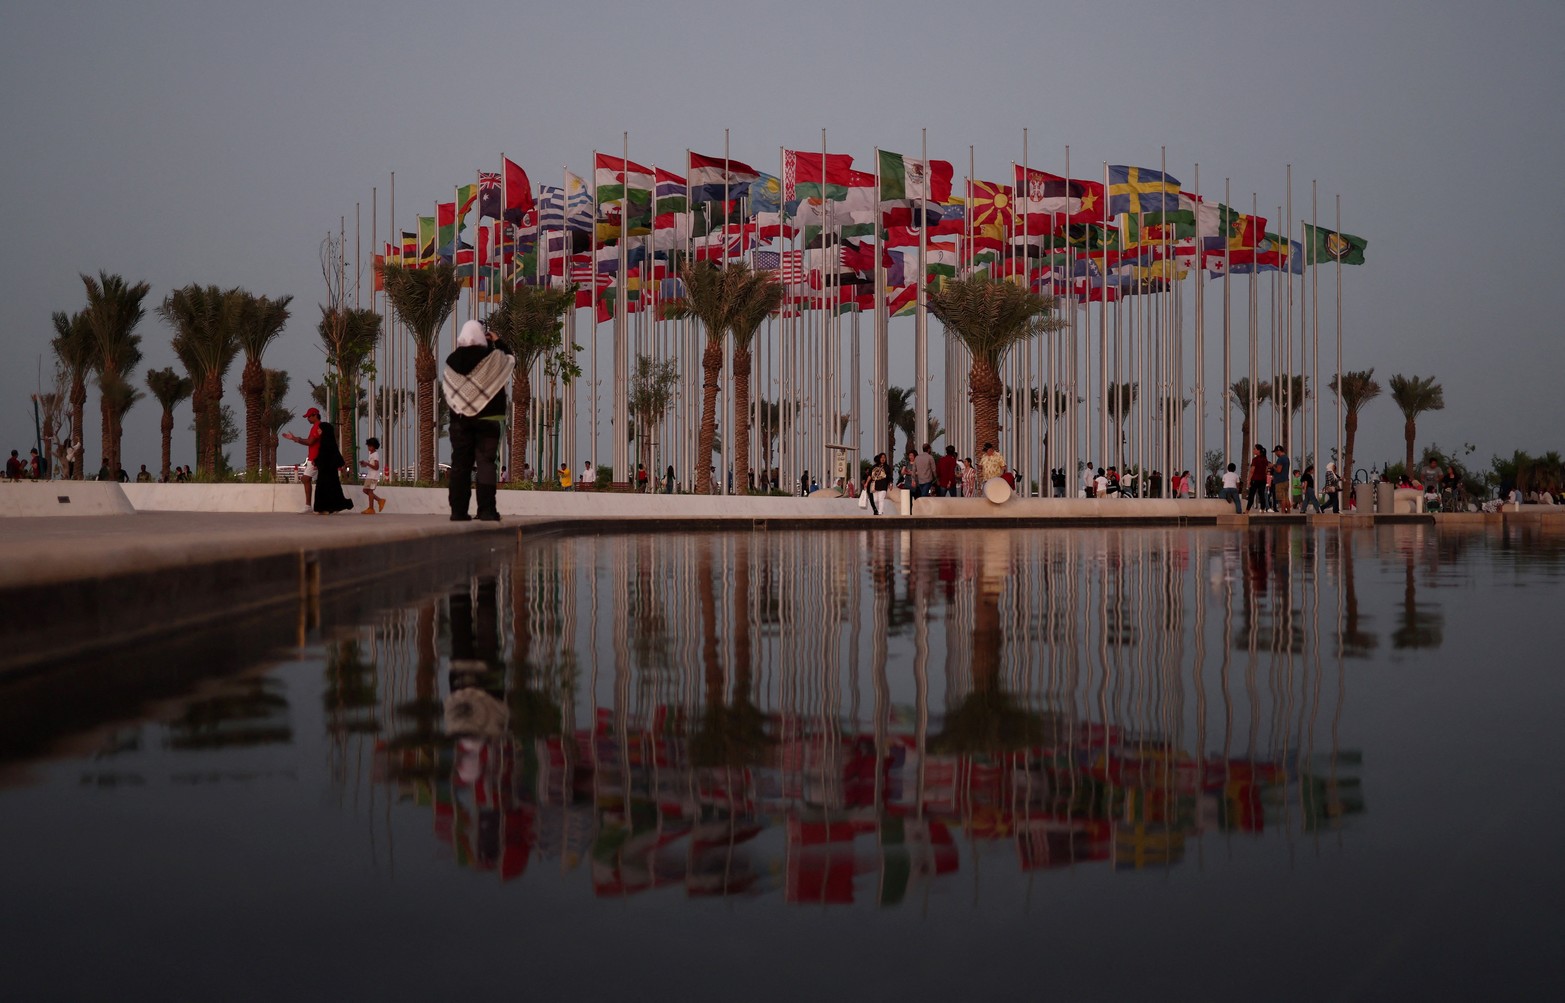 Vista general de Flag Plaza en Doha, lugar donde se exhiben las banderas de los distintos países que participan del mundial de fútbol.